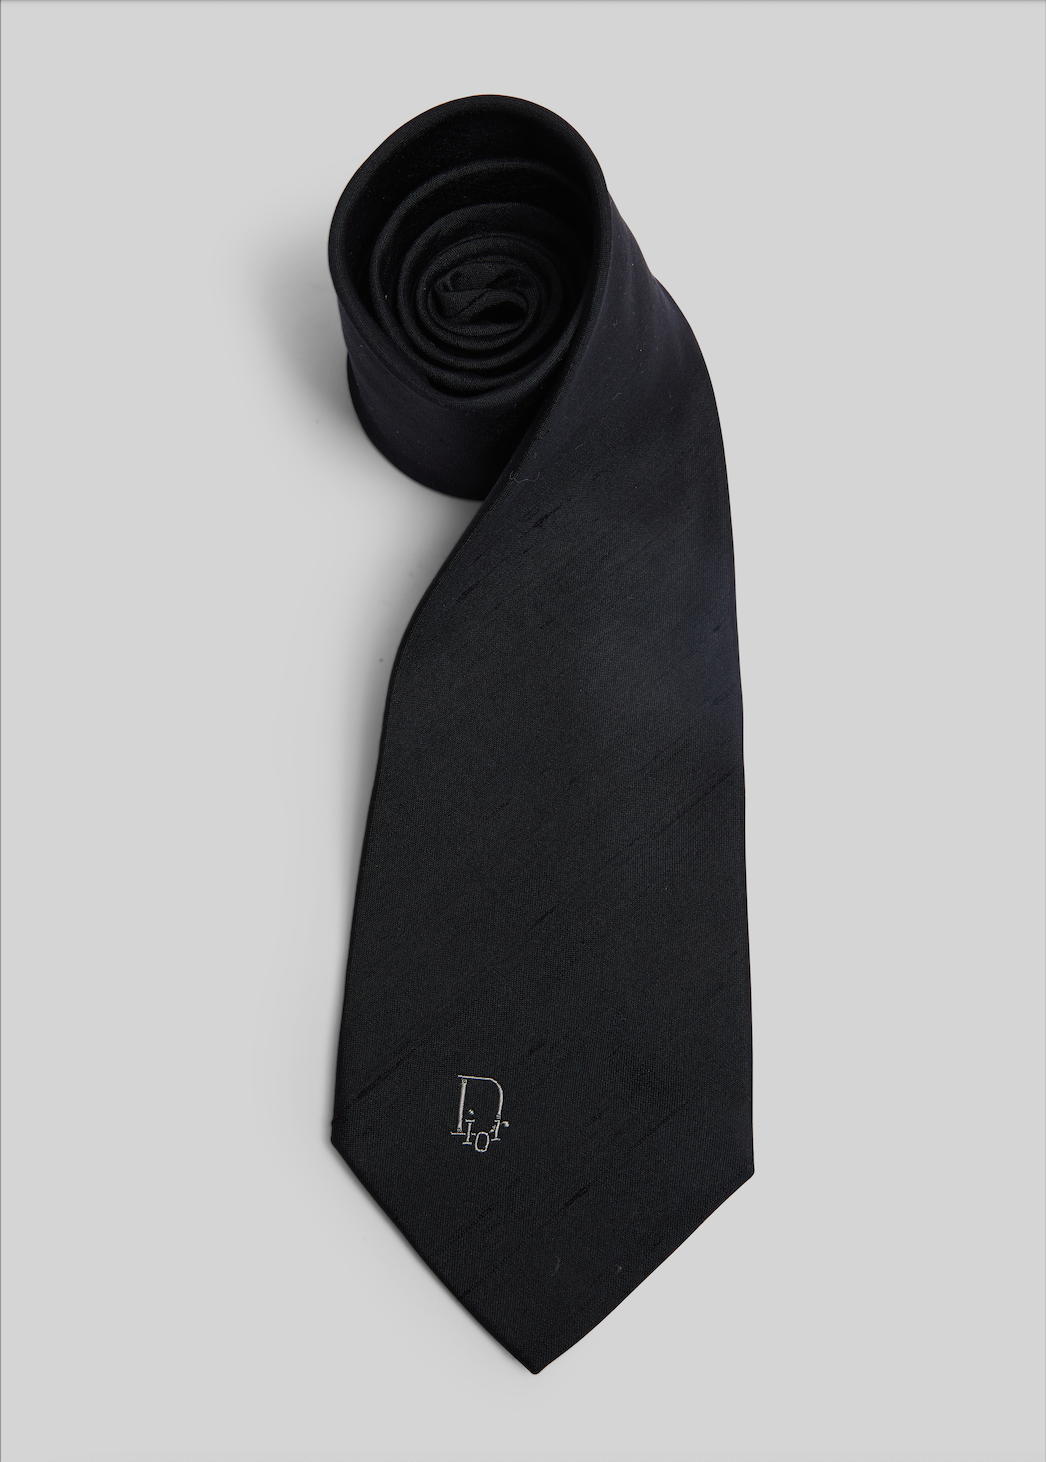 Christian Dior Monsieur tie